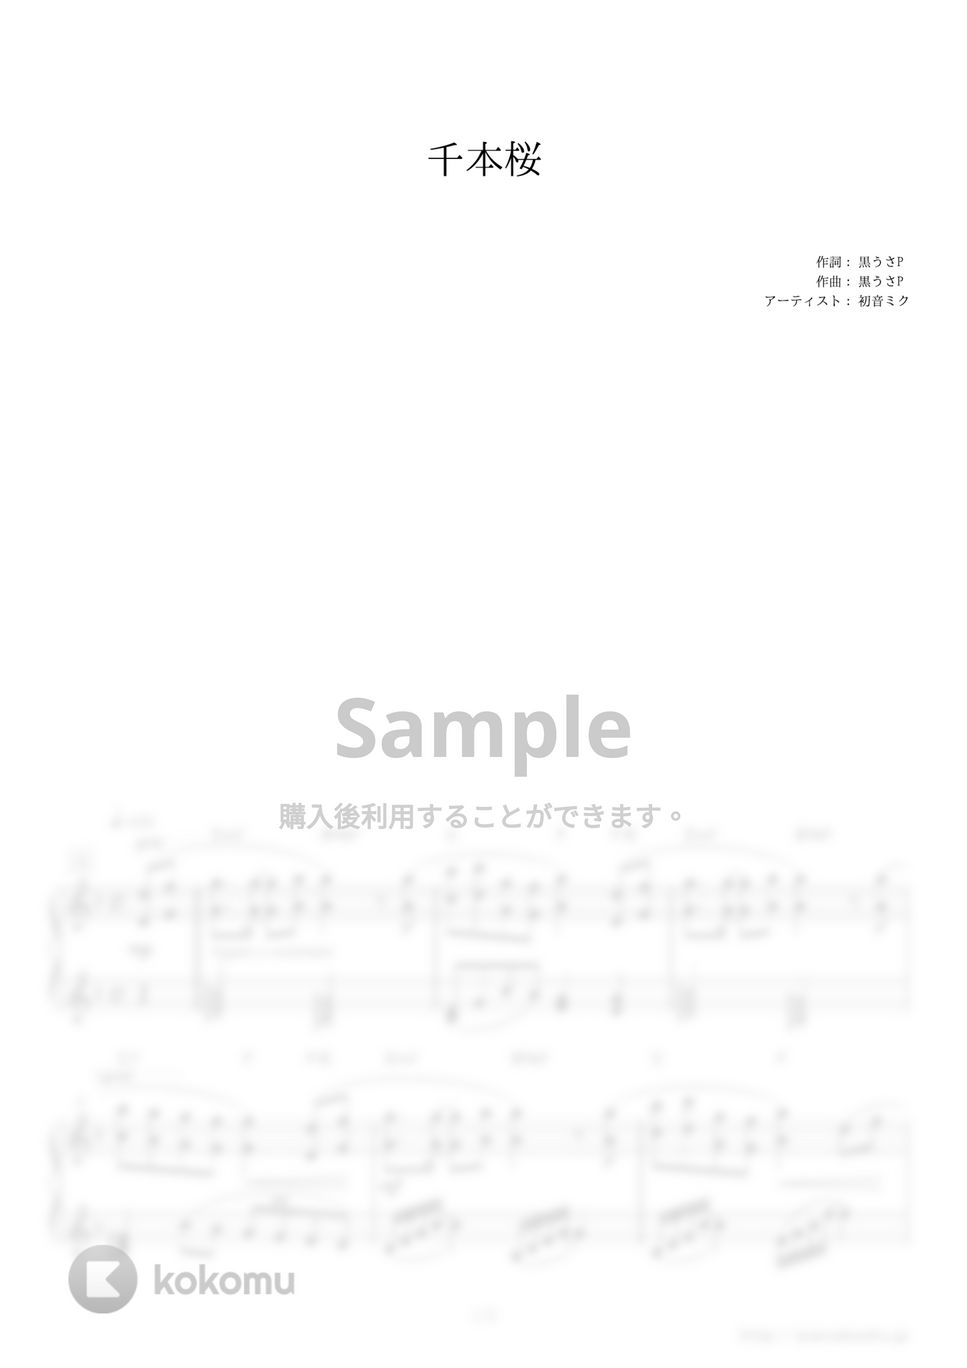 黒うさP - 千本桜 (TOYOTAハイブリッドカー「AQUA」CMソング) by ピアノの本棚